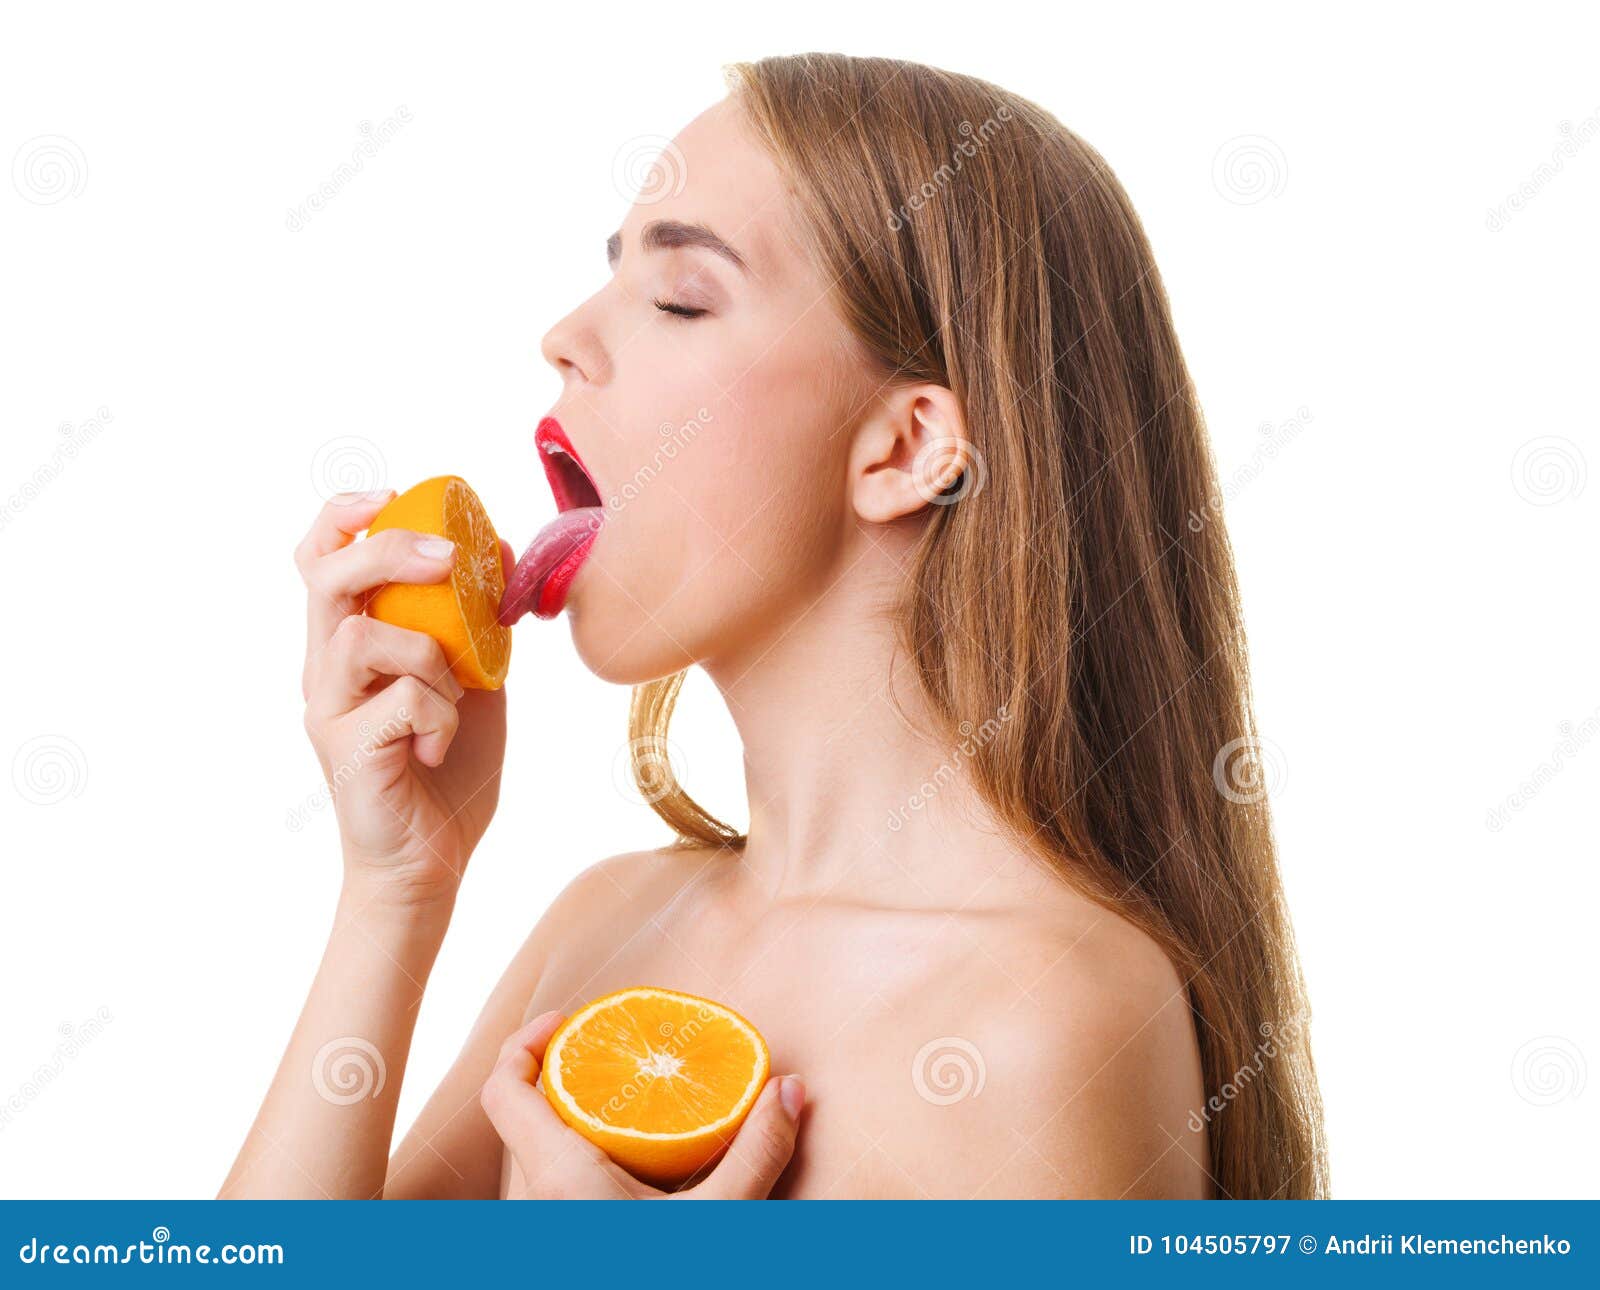 Лижет пол. Девушка облизывает пол. Девушка лижет апельсин. Девушка облизывает апельсин наслаждение. Девушка облизывает кукурузу.